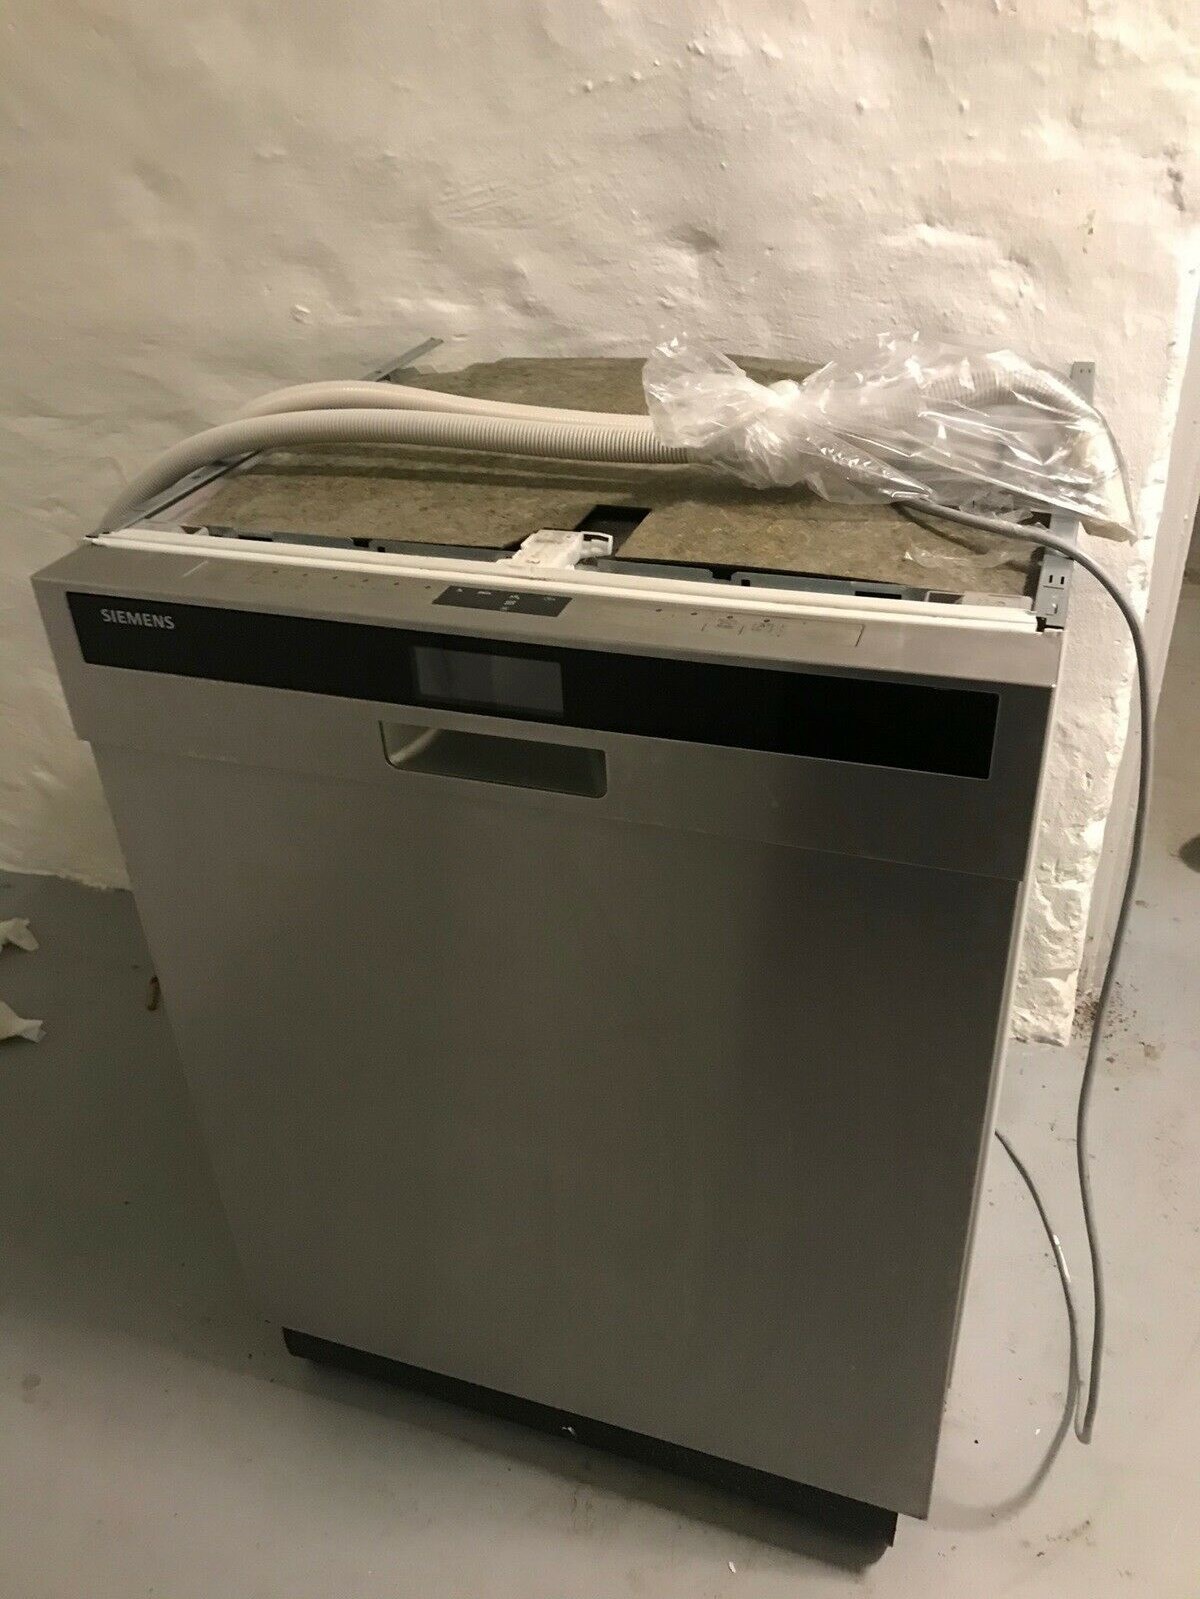 Der er penge at spare, når du køber en opvaskemaskine brugt. Denne model fra Siemens, som står klar til afhentning i Brønshøj, kostede oprindeligt 4.000 kroner fra ny. I dag sælges den for 700 kroner.